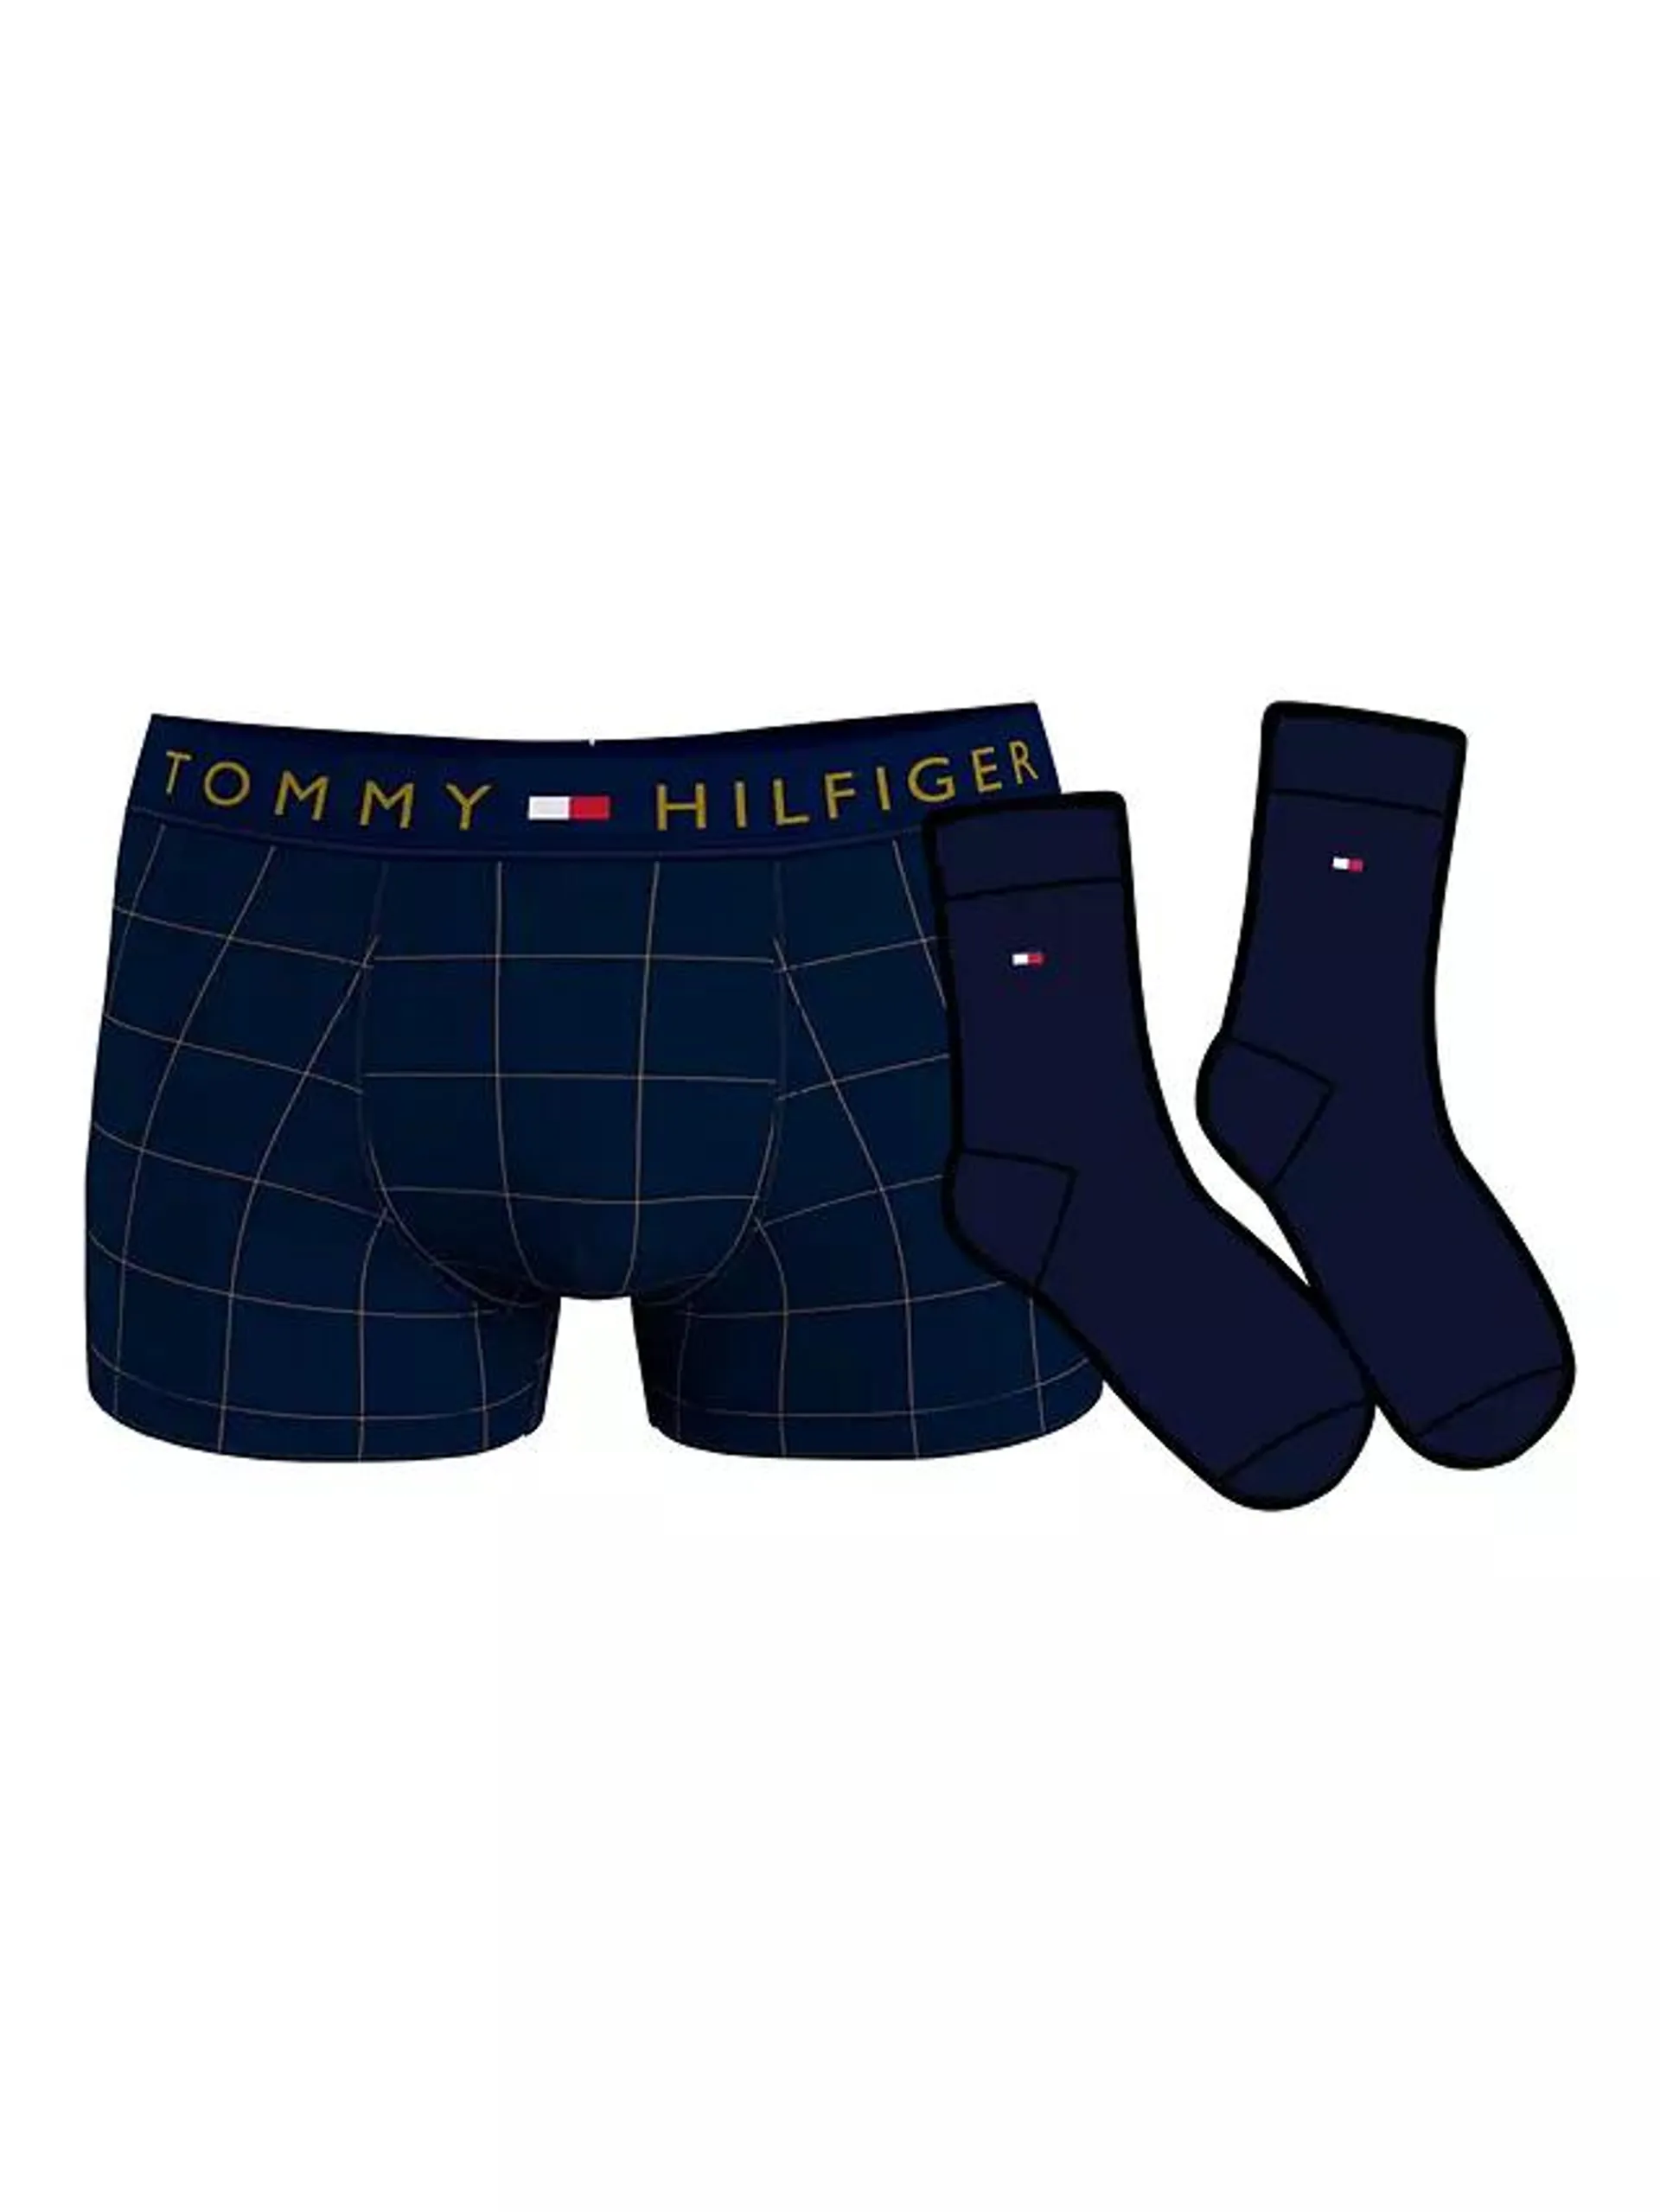 Tommy Hilfiger Window Check Jersey Trunks & Socks Set, Desert Sky